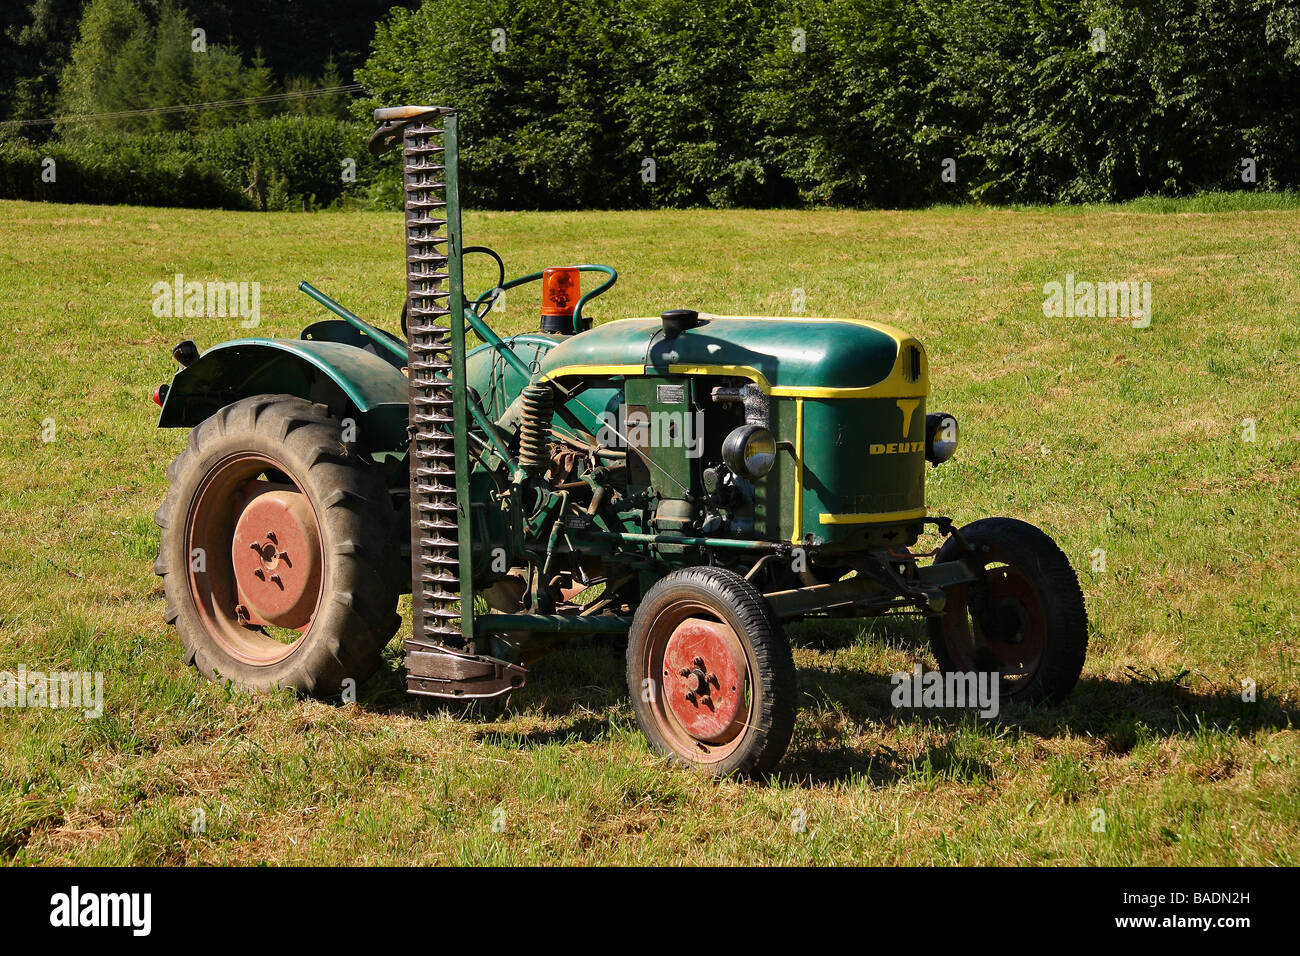 Un livre vert et jaune 1959 Tracteur Deutz F1 monté sur le côté avec la faucheuse d'herbe dans un champ Limousin France Banque D'Images